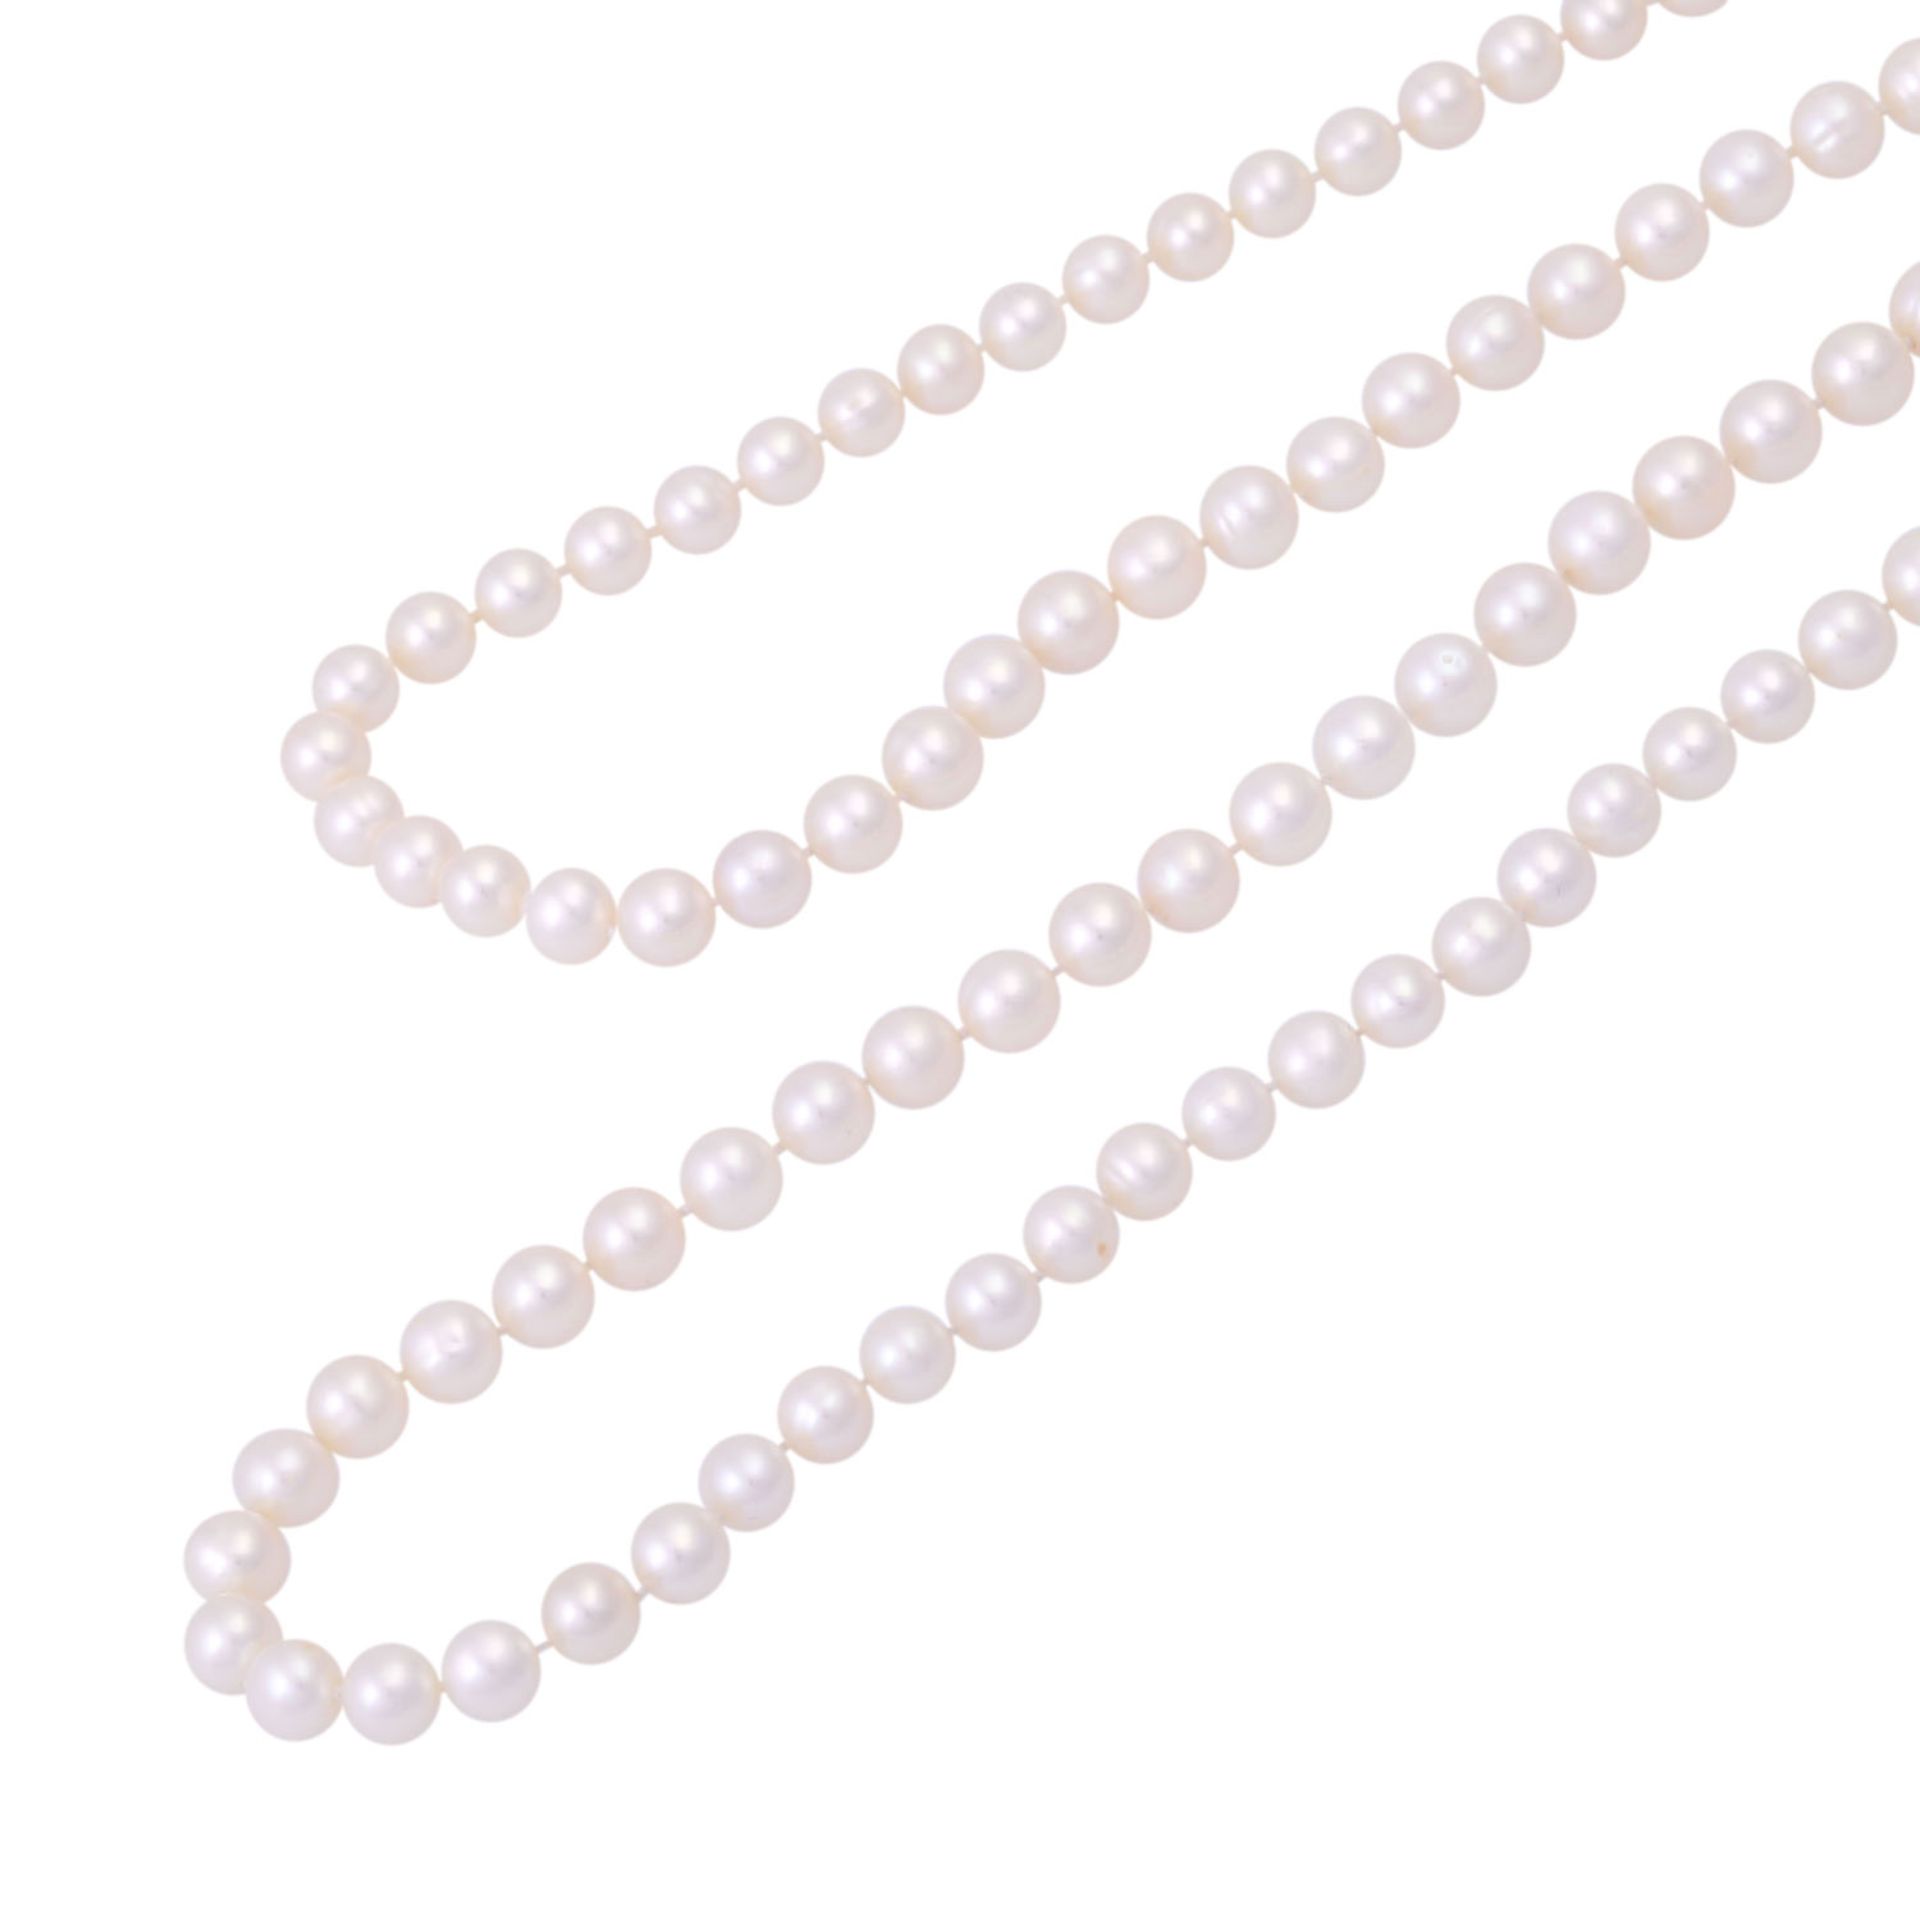 Lange Perlenketteaus weißen Zuchtperlen ca. 6,5-7 mm, endlos aufgezogen, schöner Lüster. 20./21. Jh. - Bild 4 aus 4